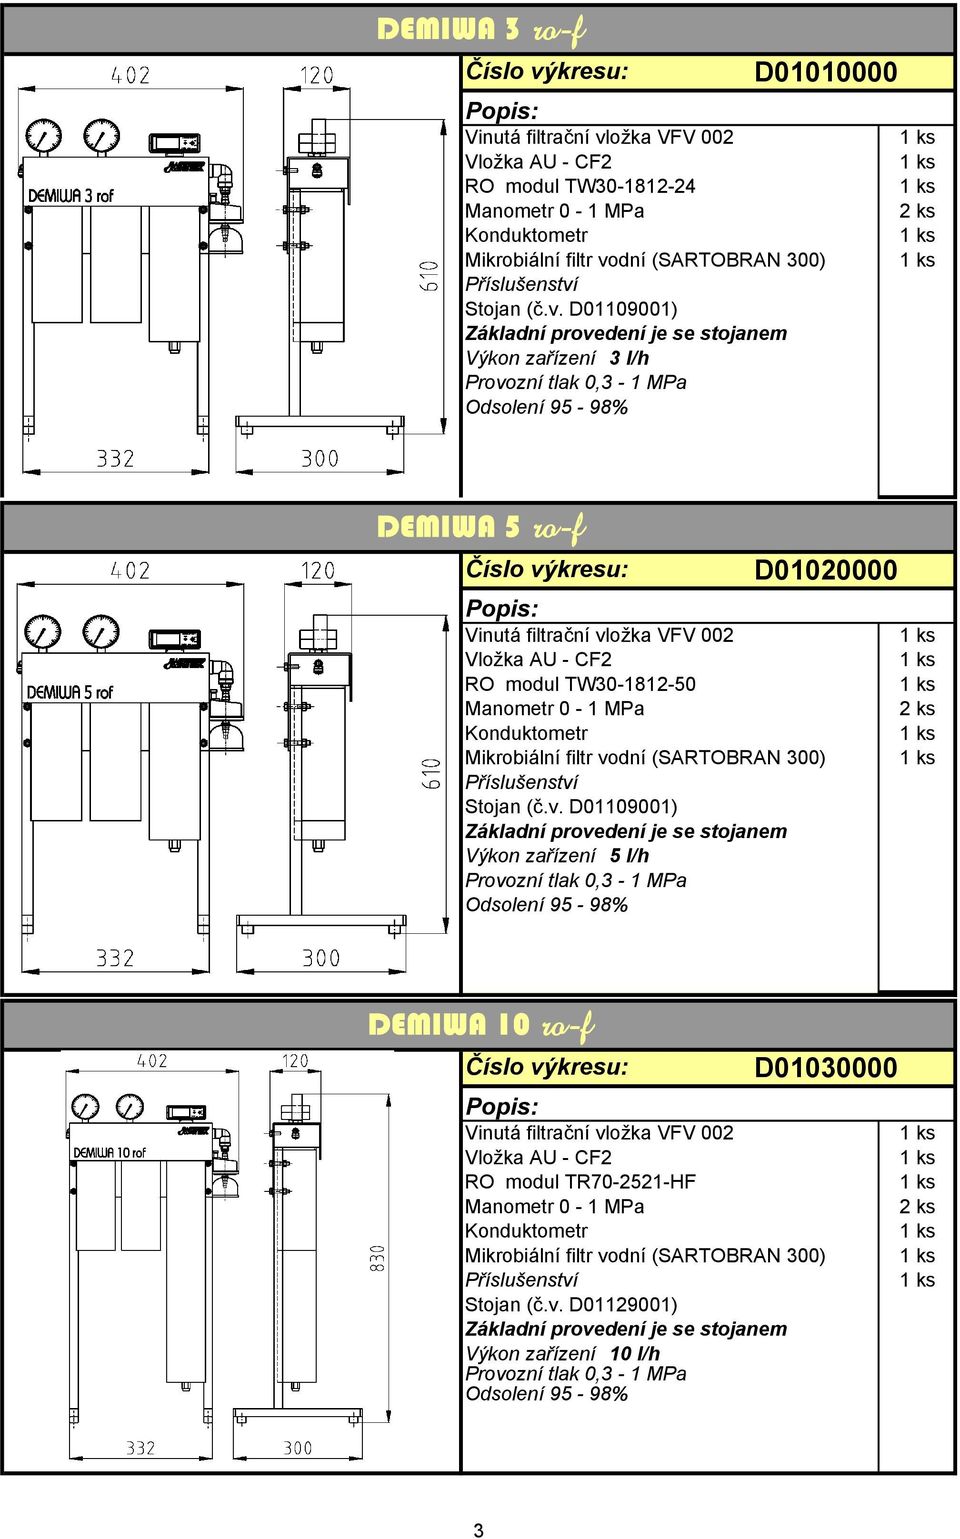 Výkon zařízení 5 l/h Provozní tlak 0,3 1 MPa Odsolení 95 98% DEMIWA 10 rof D01030000 Vložka AU CF2 RO modul